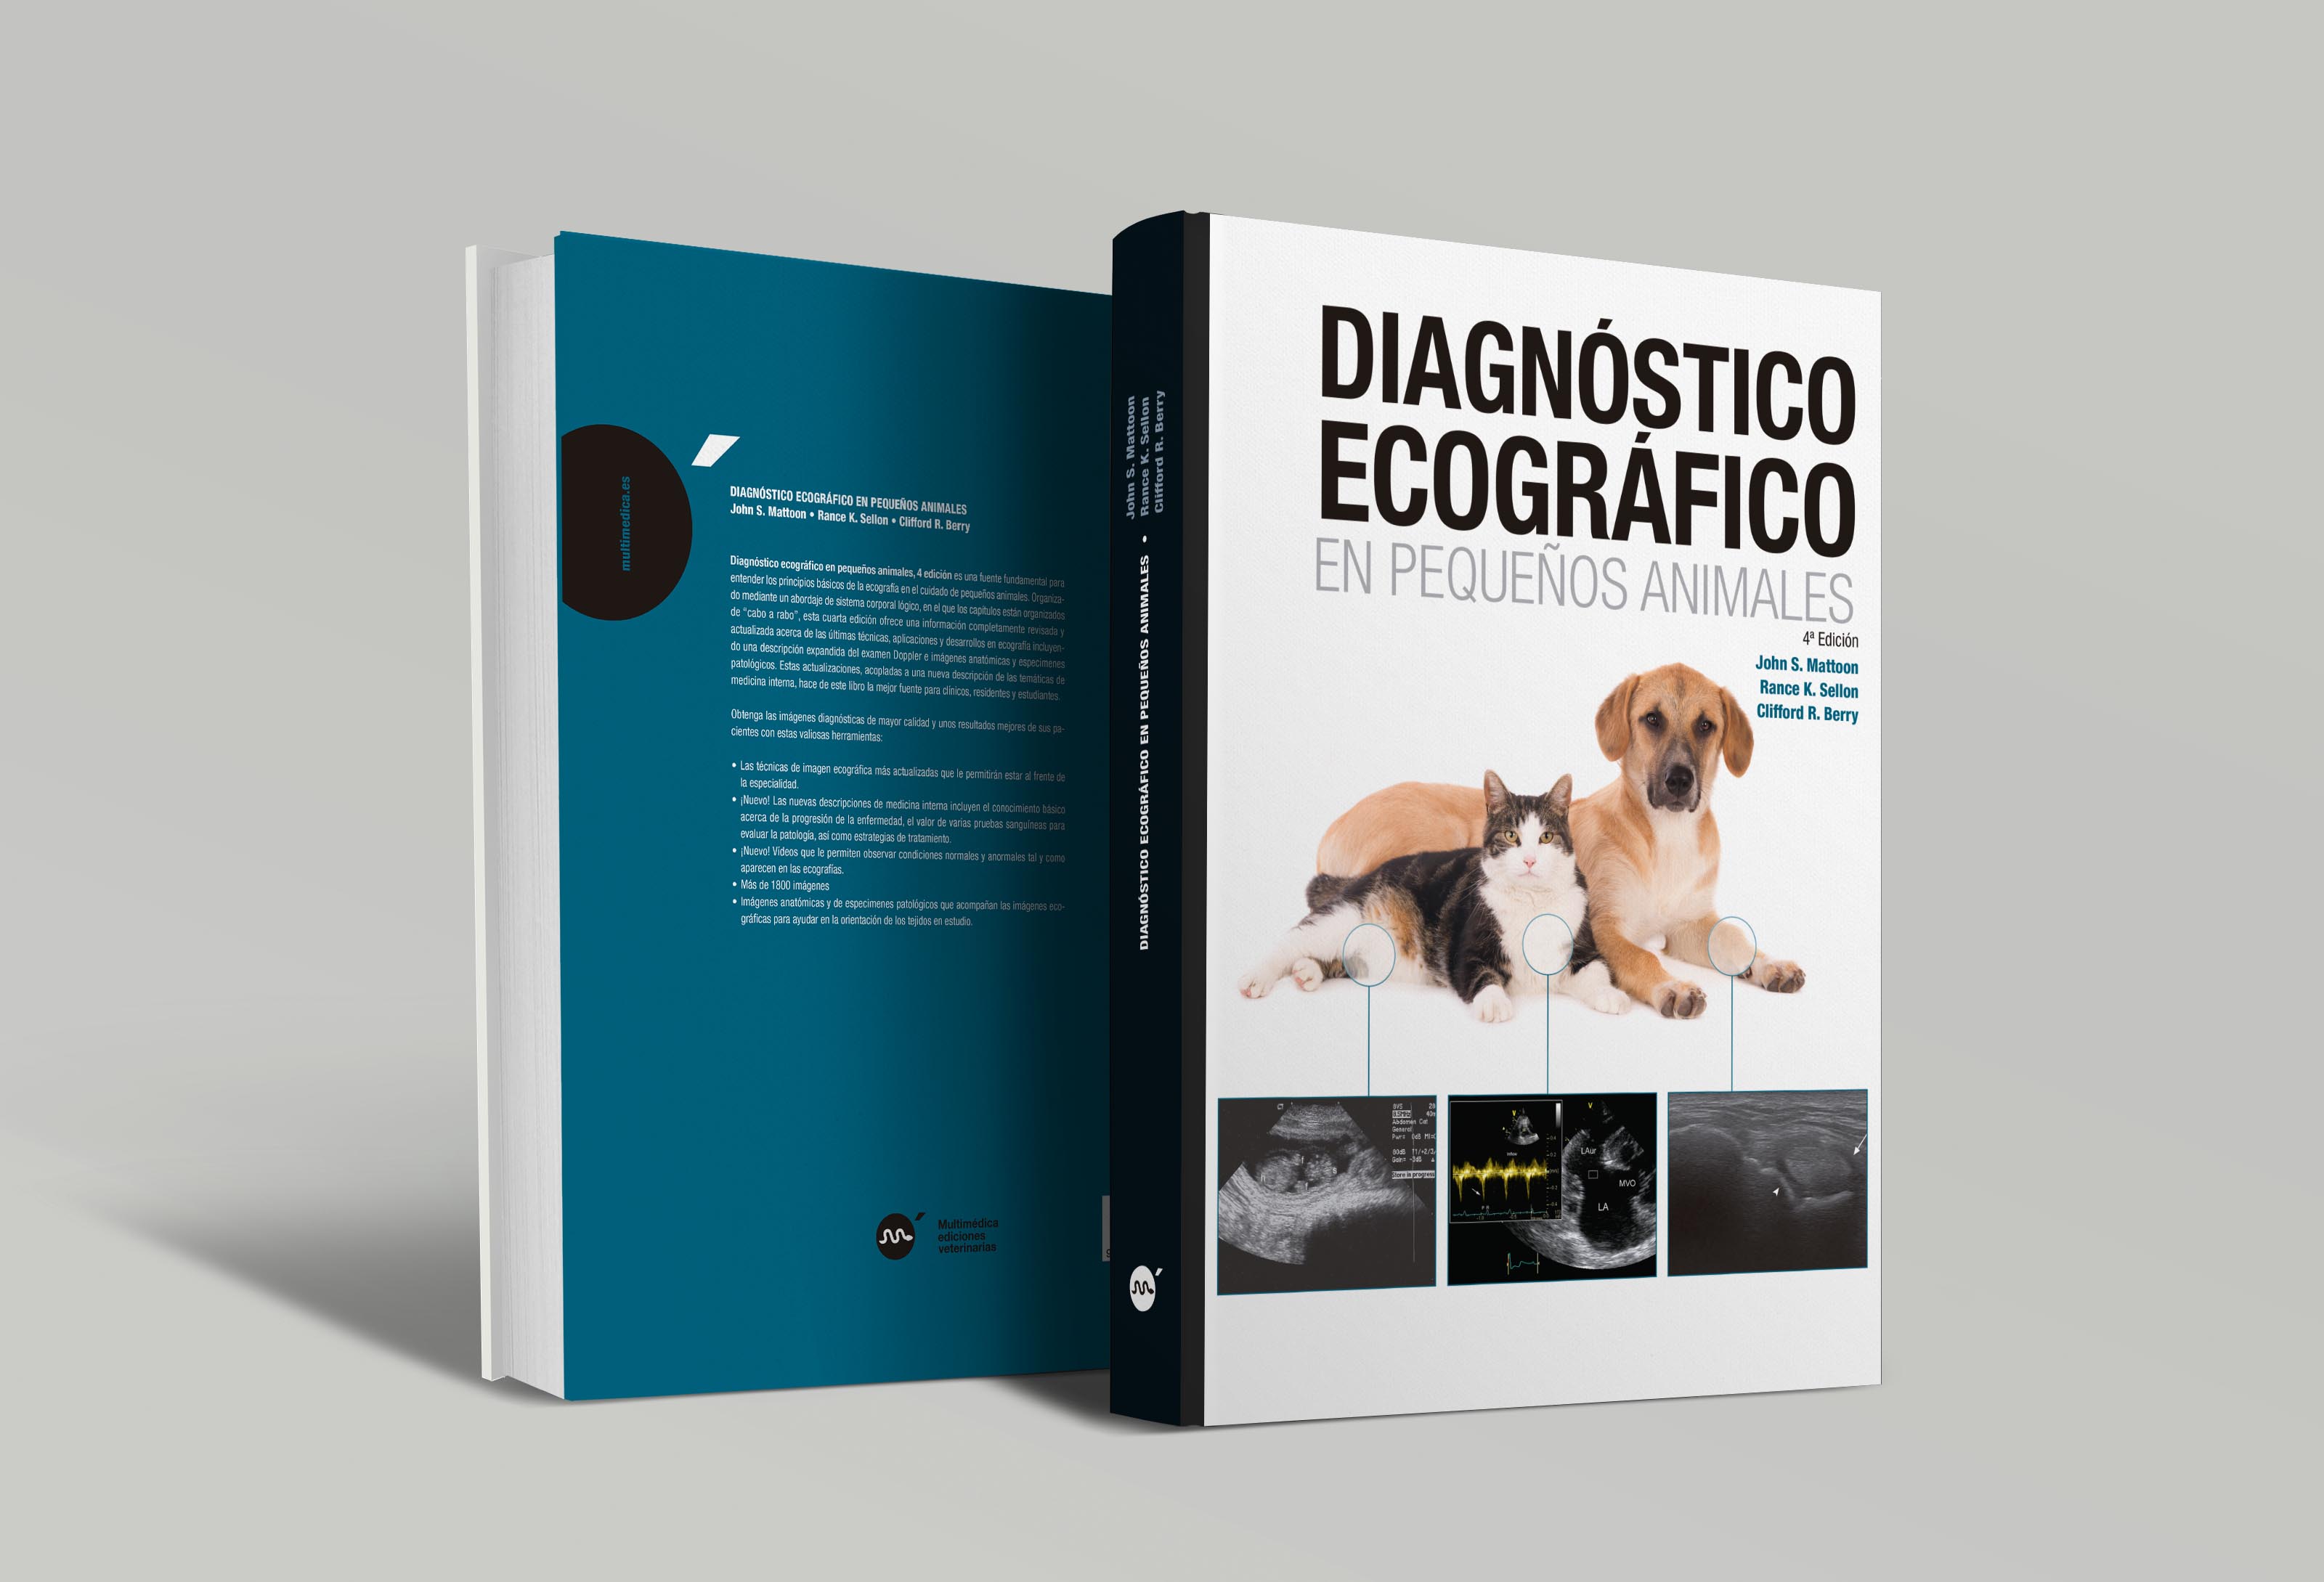 Diagnóstico Ecográfico en Pequeños Animales, 4ª edición